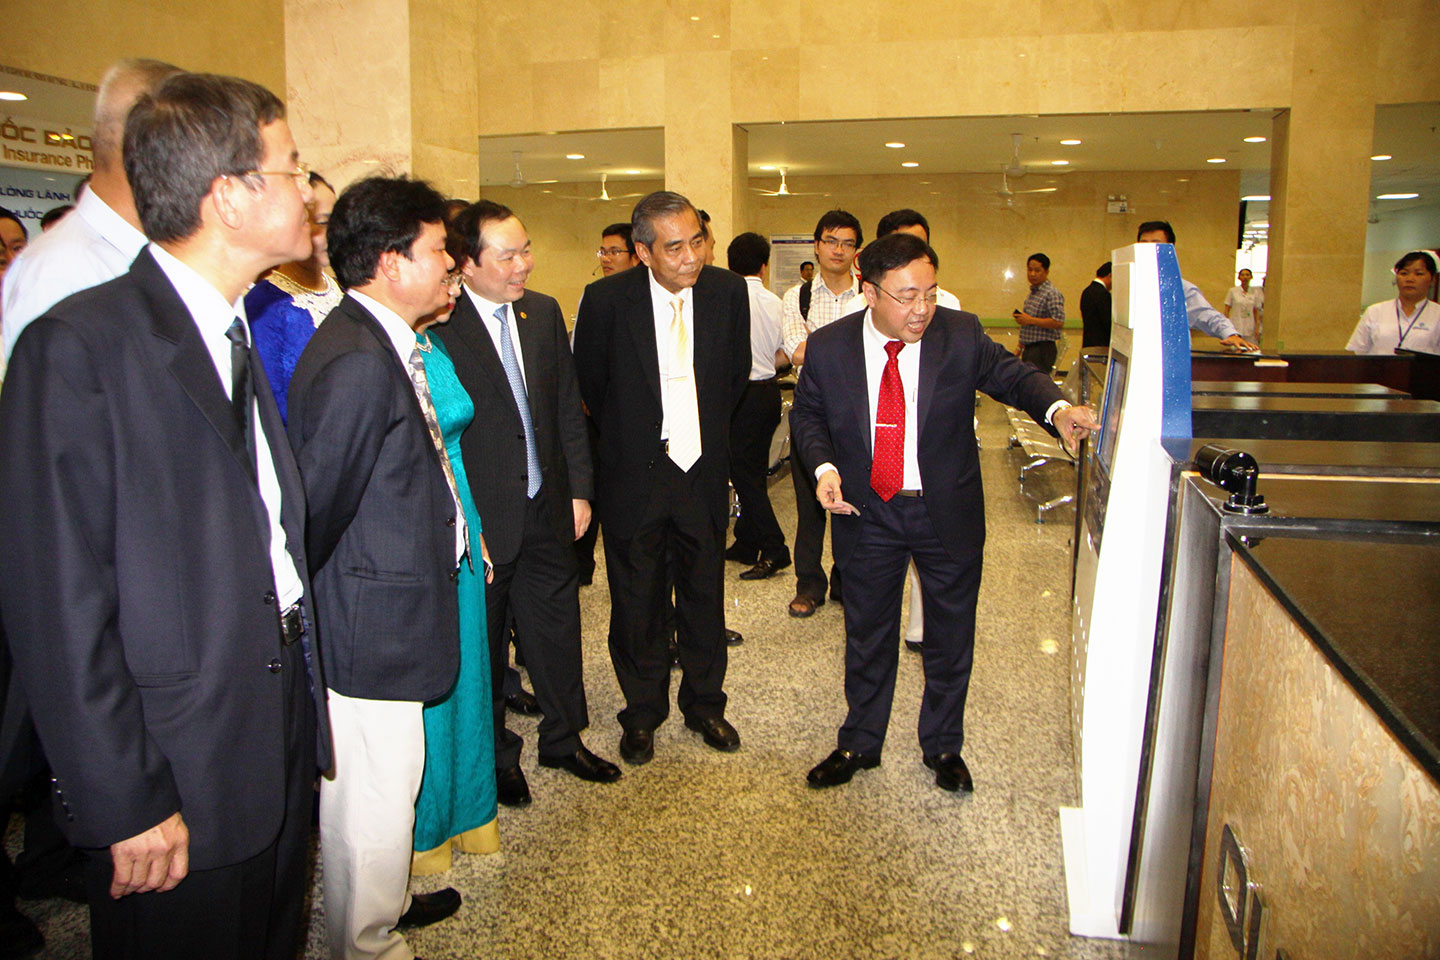 Giám đốc bệnh viện đa khoa Đồng Nai Phan Huy Anh Vũ hướng dẫn các đại biểu tham quan bệnh viện mới